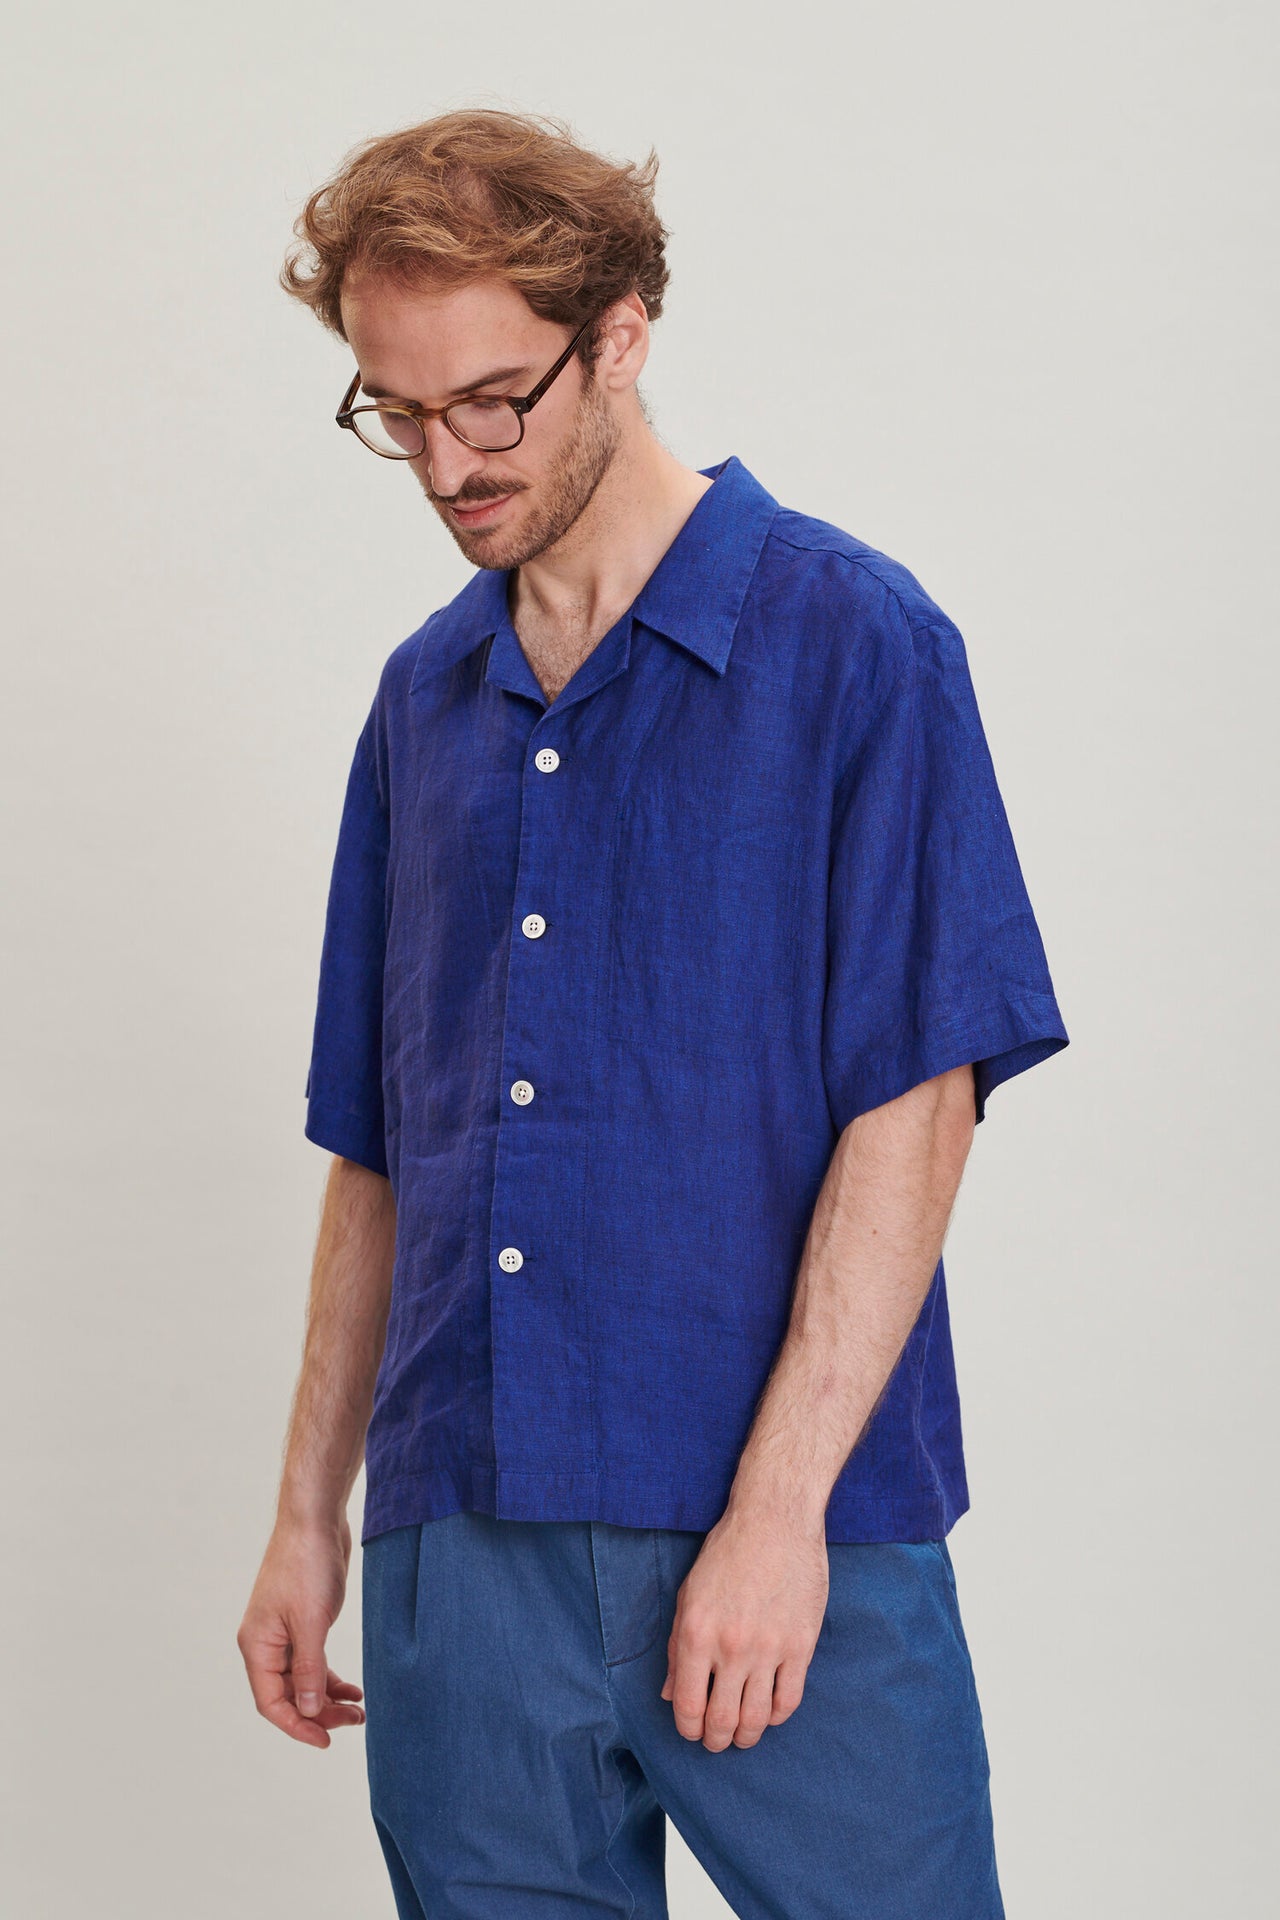 Short Sleeve Cuban Collar Shirt in a Soft and Airy Cobalt Blue Bohemian Linen